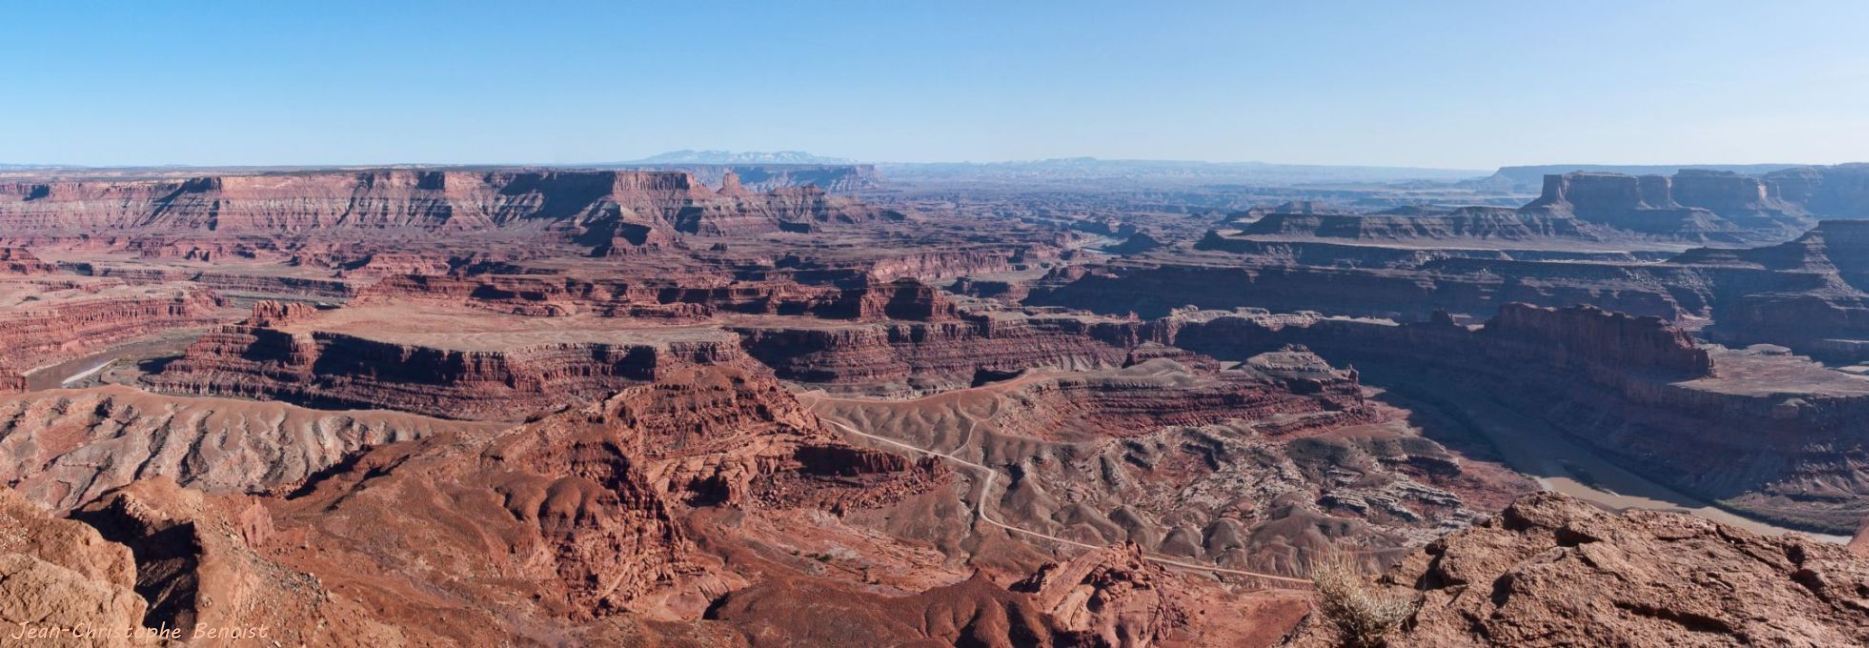 Canyonlands panorama